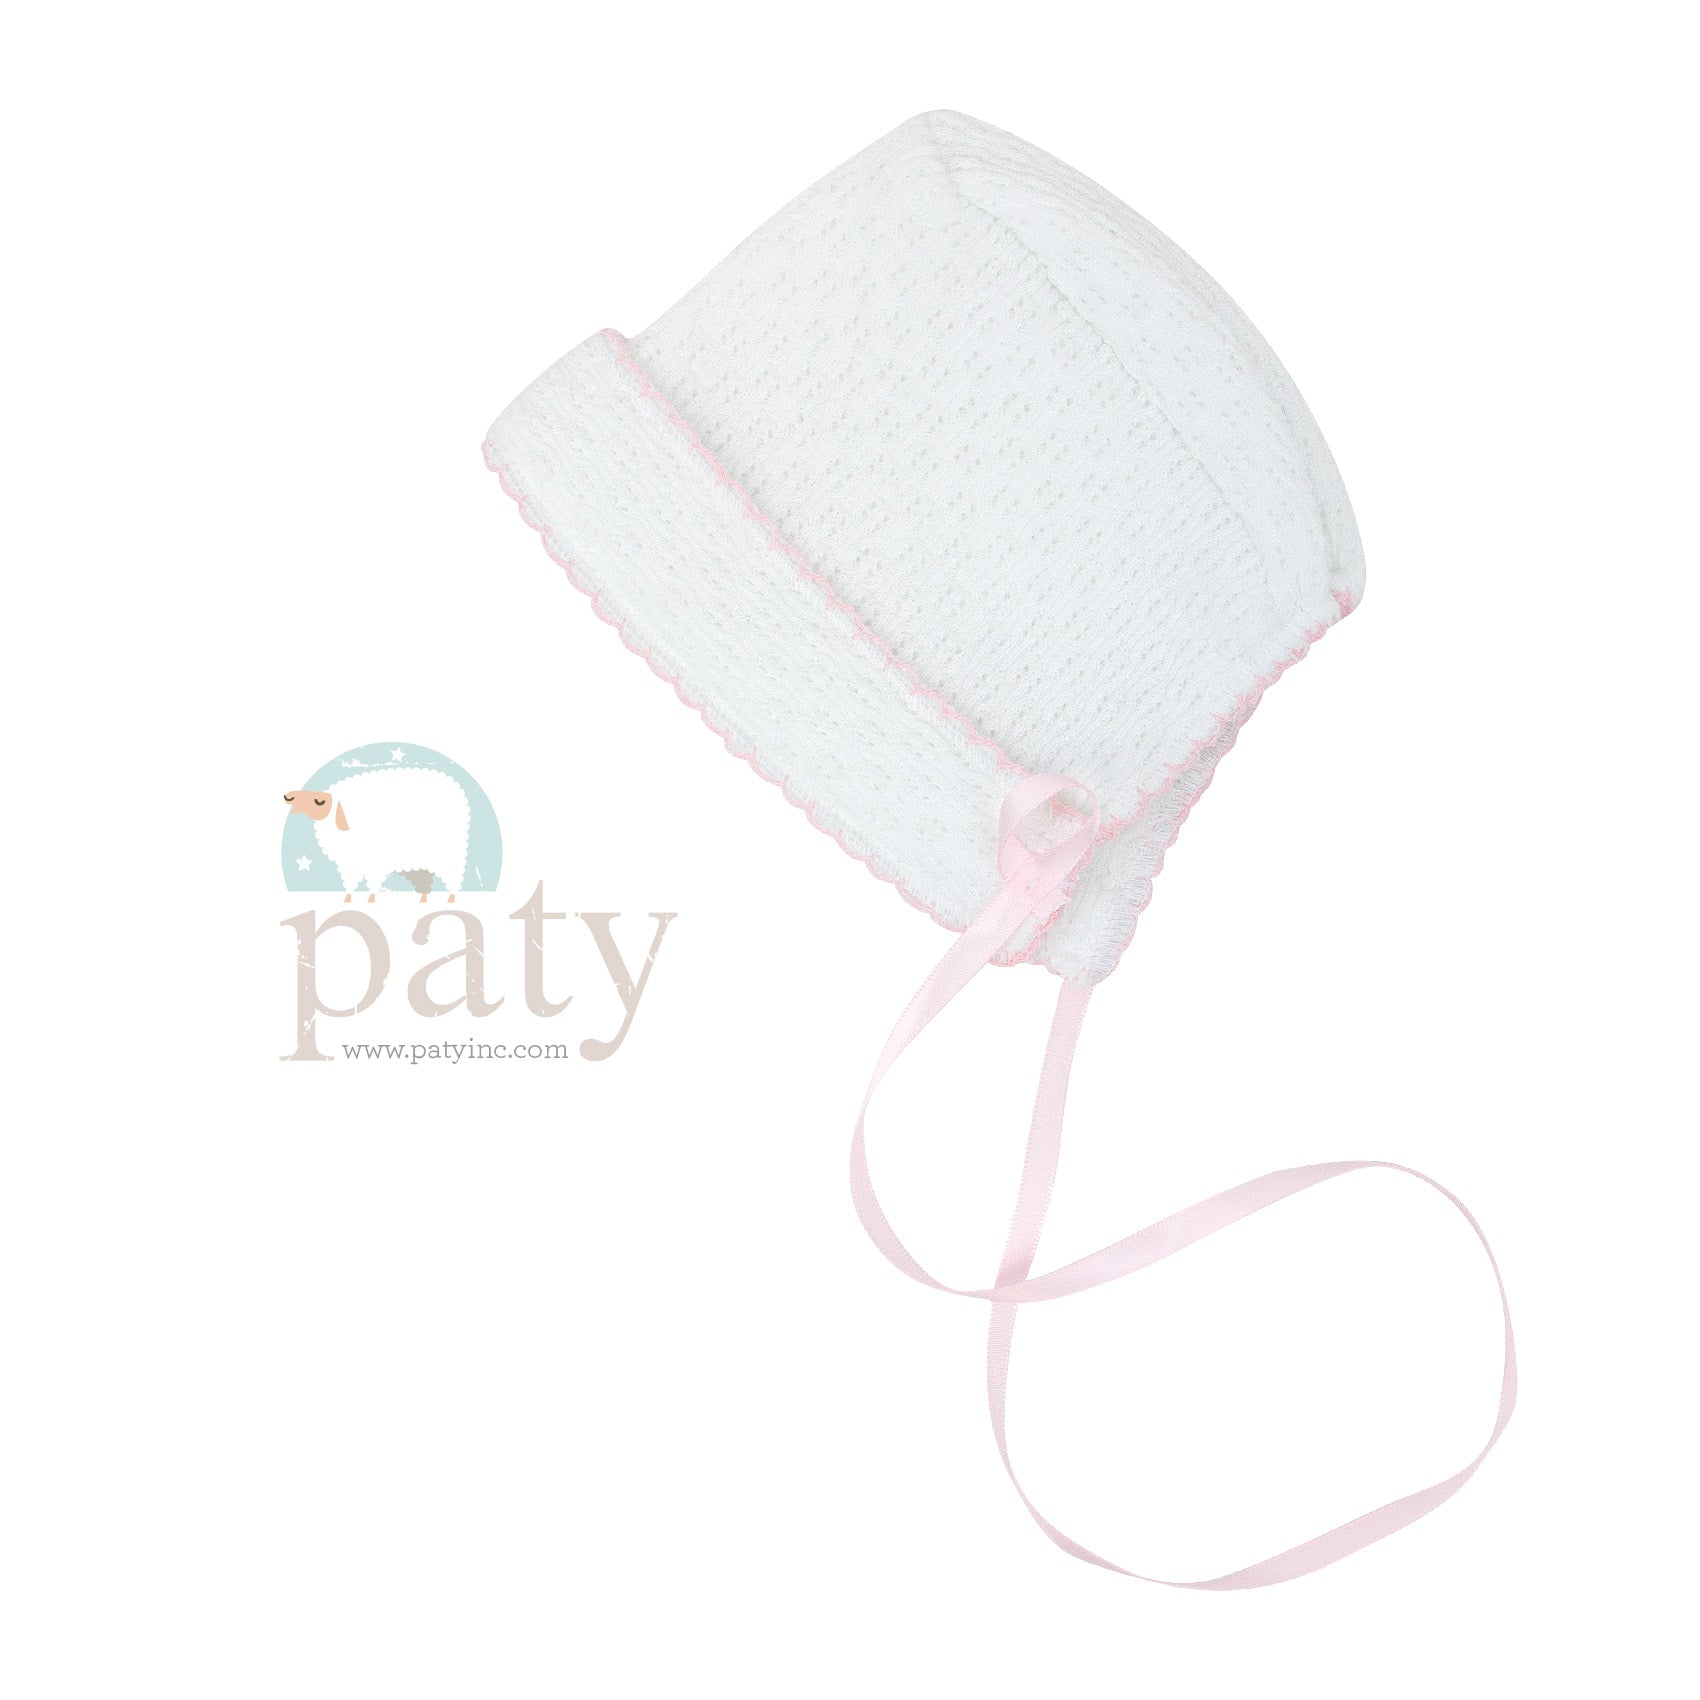 White Paty Bonnet with Ribbon Tie & Pink Trim